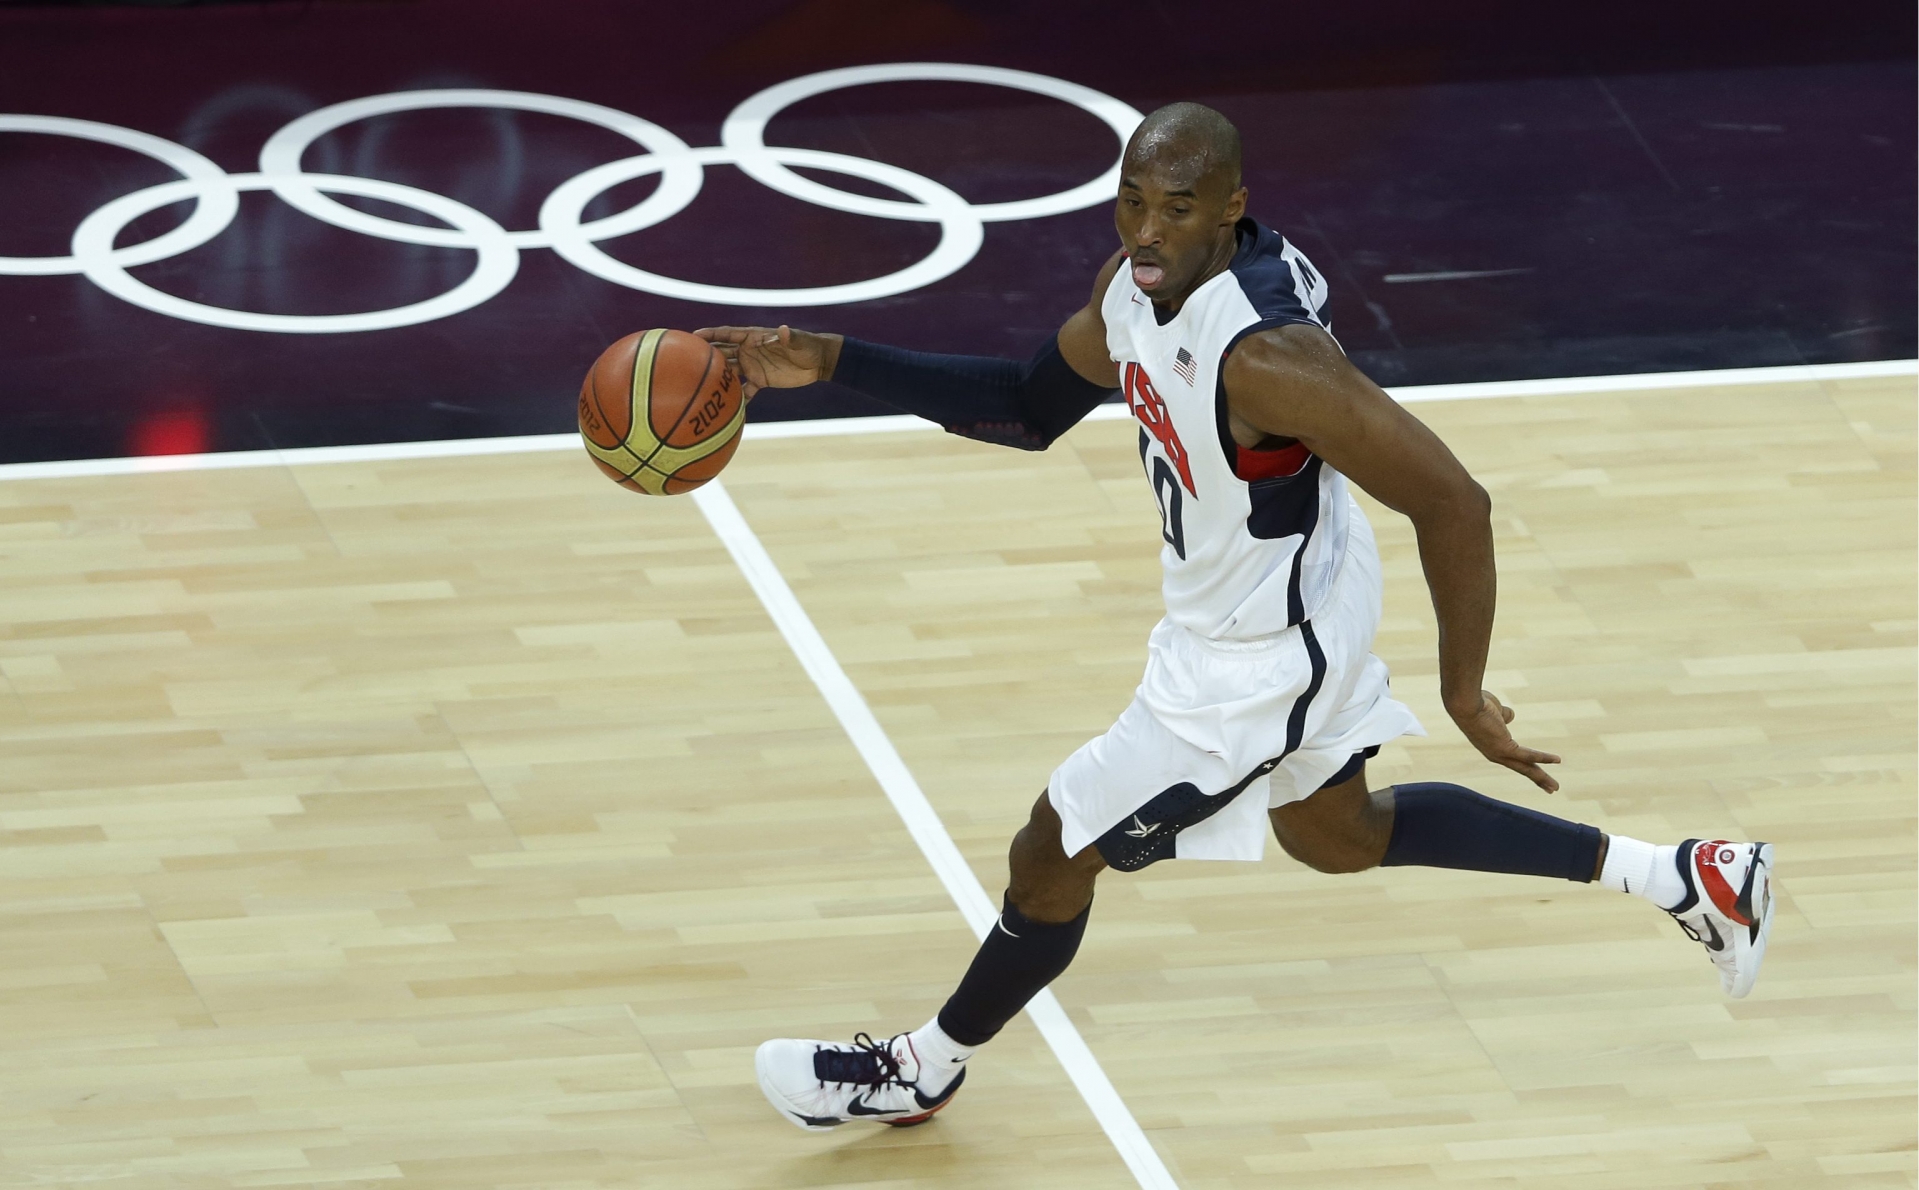 L'Américain Kobe Bryant en plein drible durant les quarts de finale face à l'Australie aux JO de Londres.